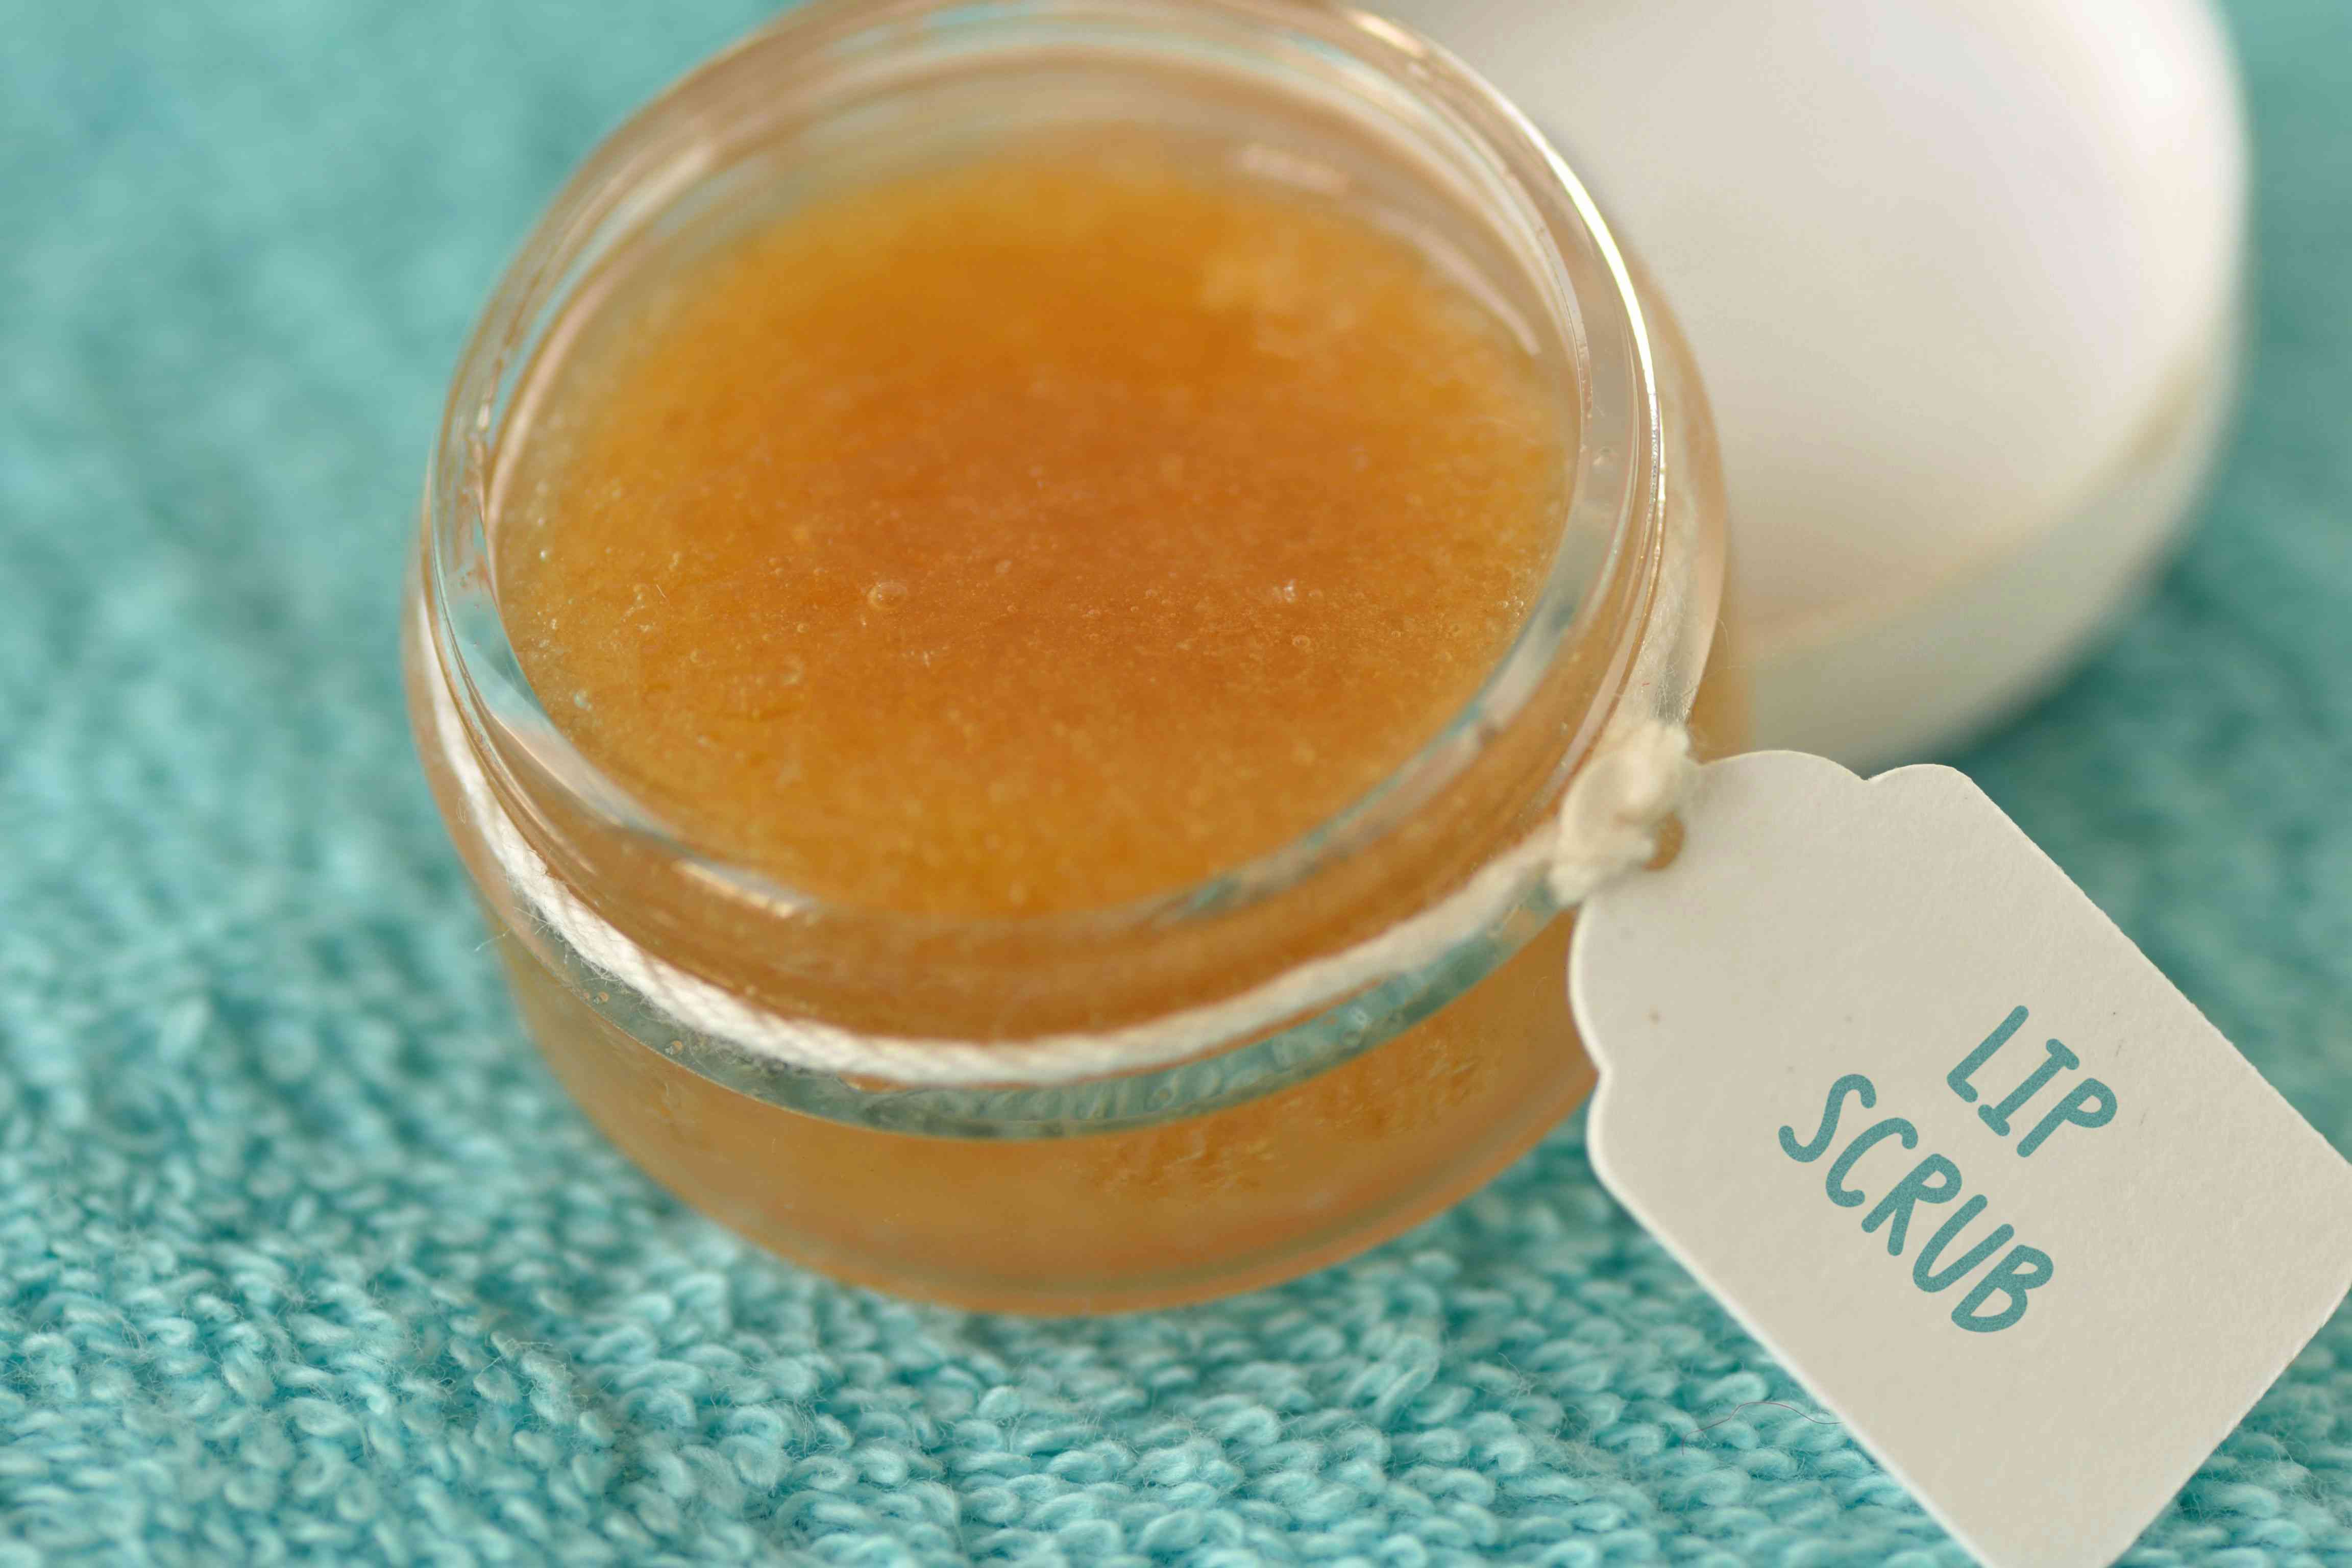 用红糖、蜂蜜和橄榄油装在玻璃罐里自制磨砂膏